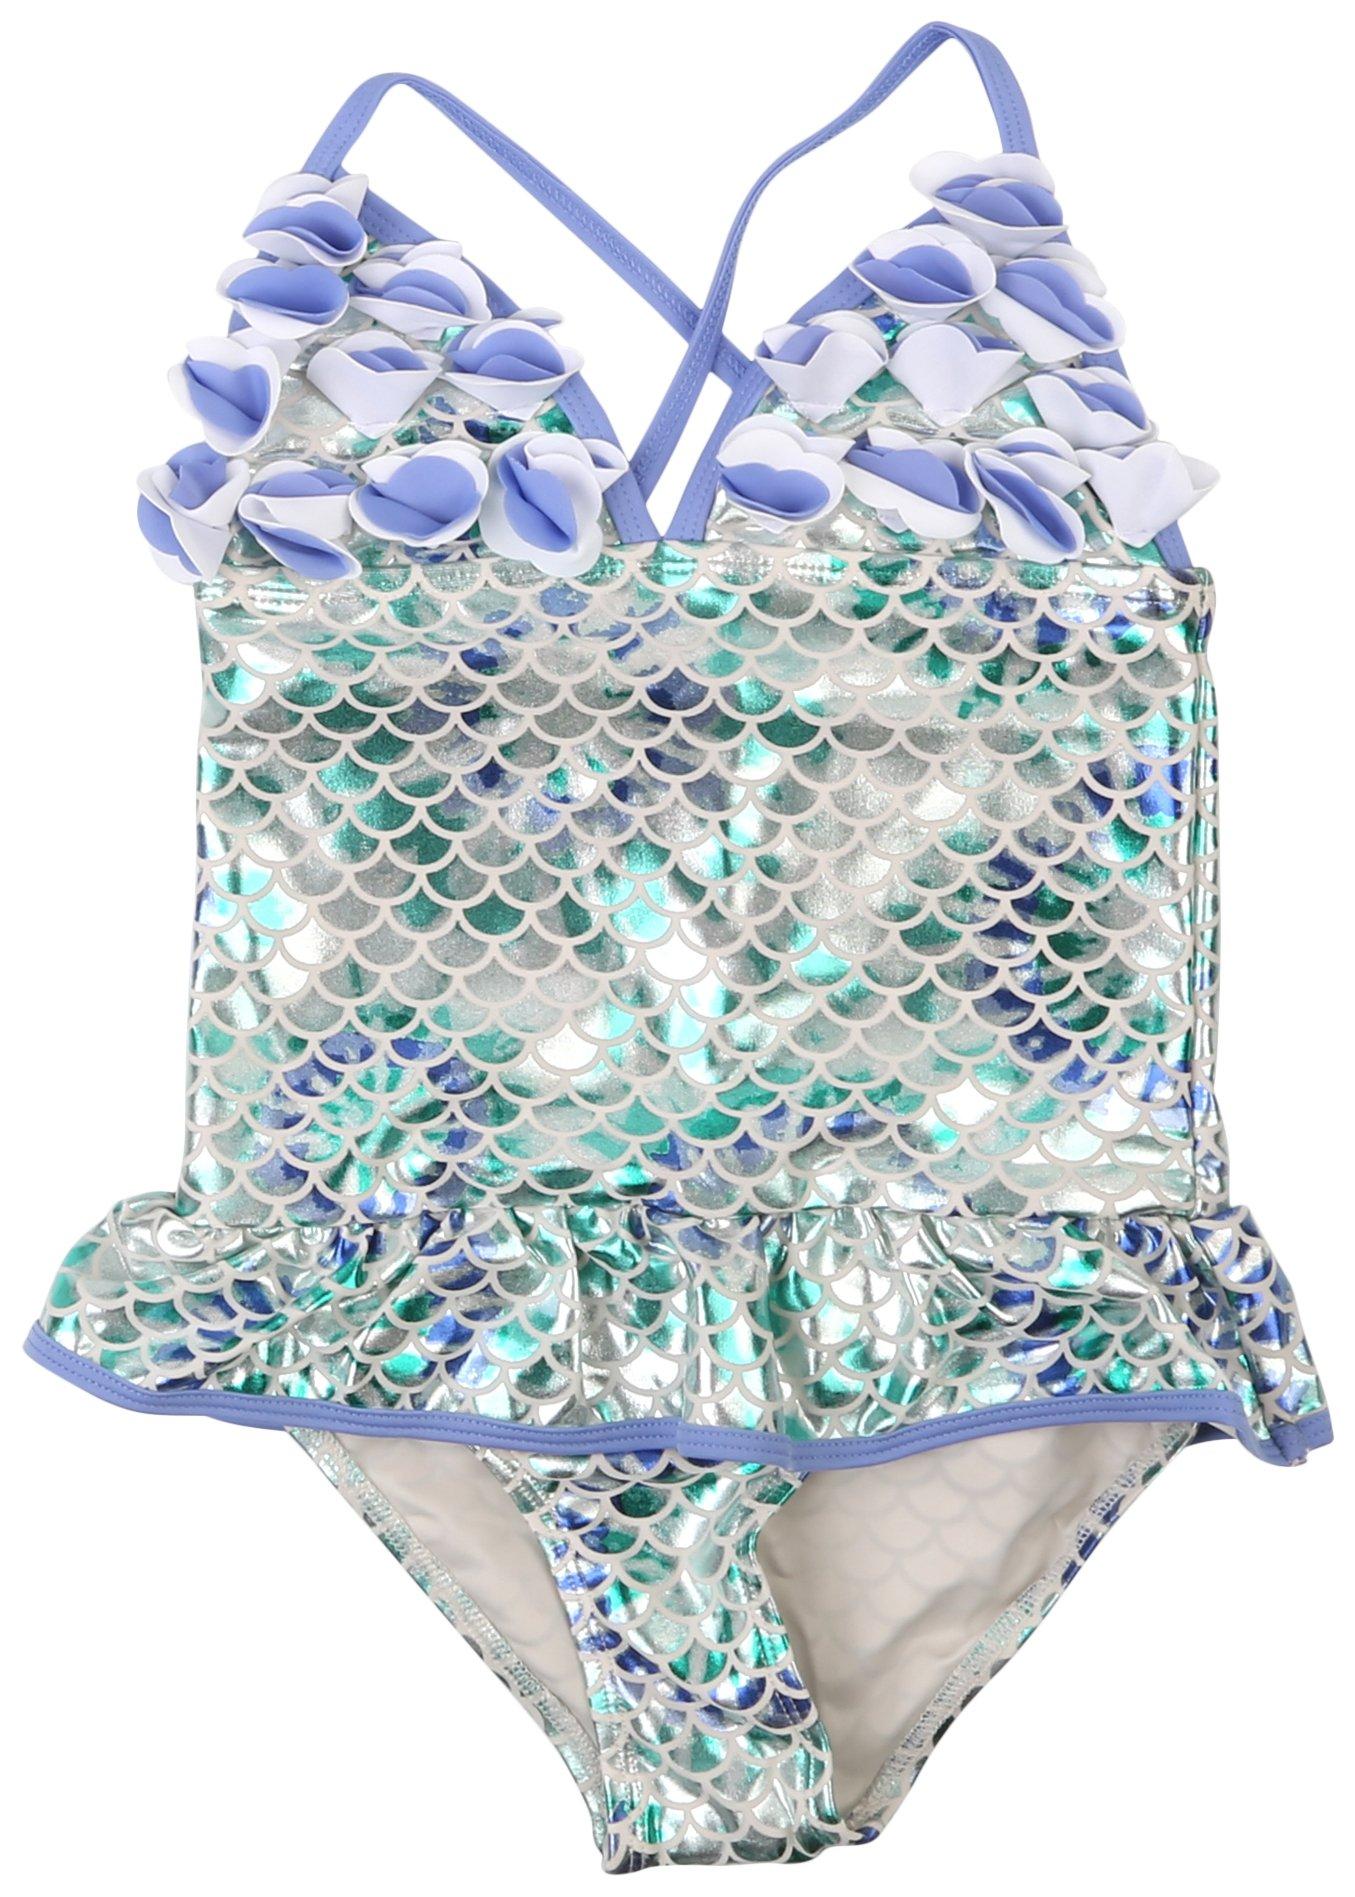 Little Girls Mermaid Scale Foil Swimsuit